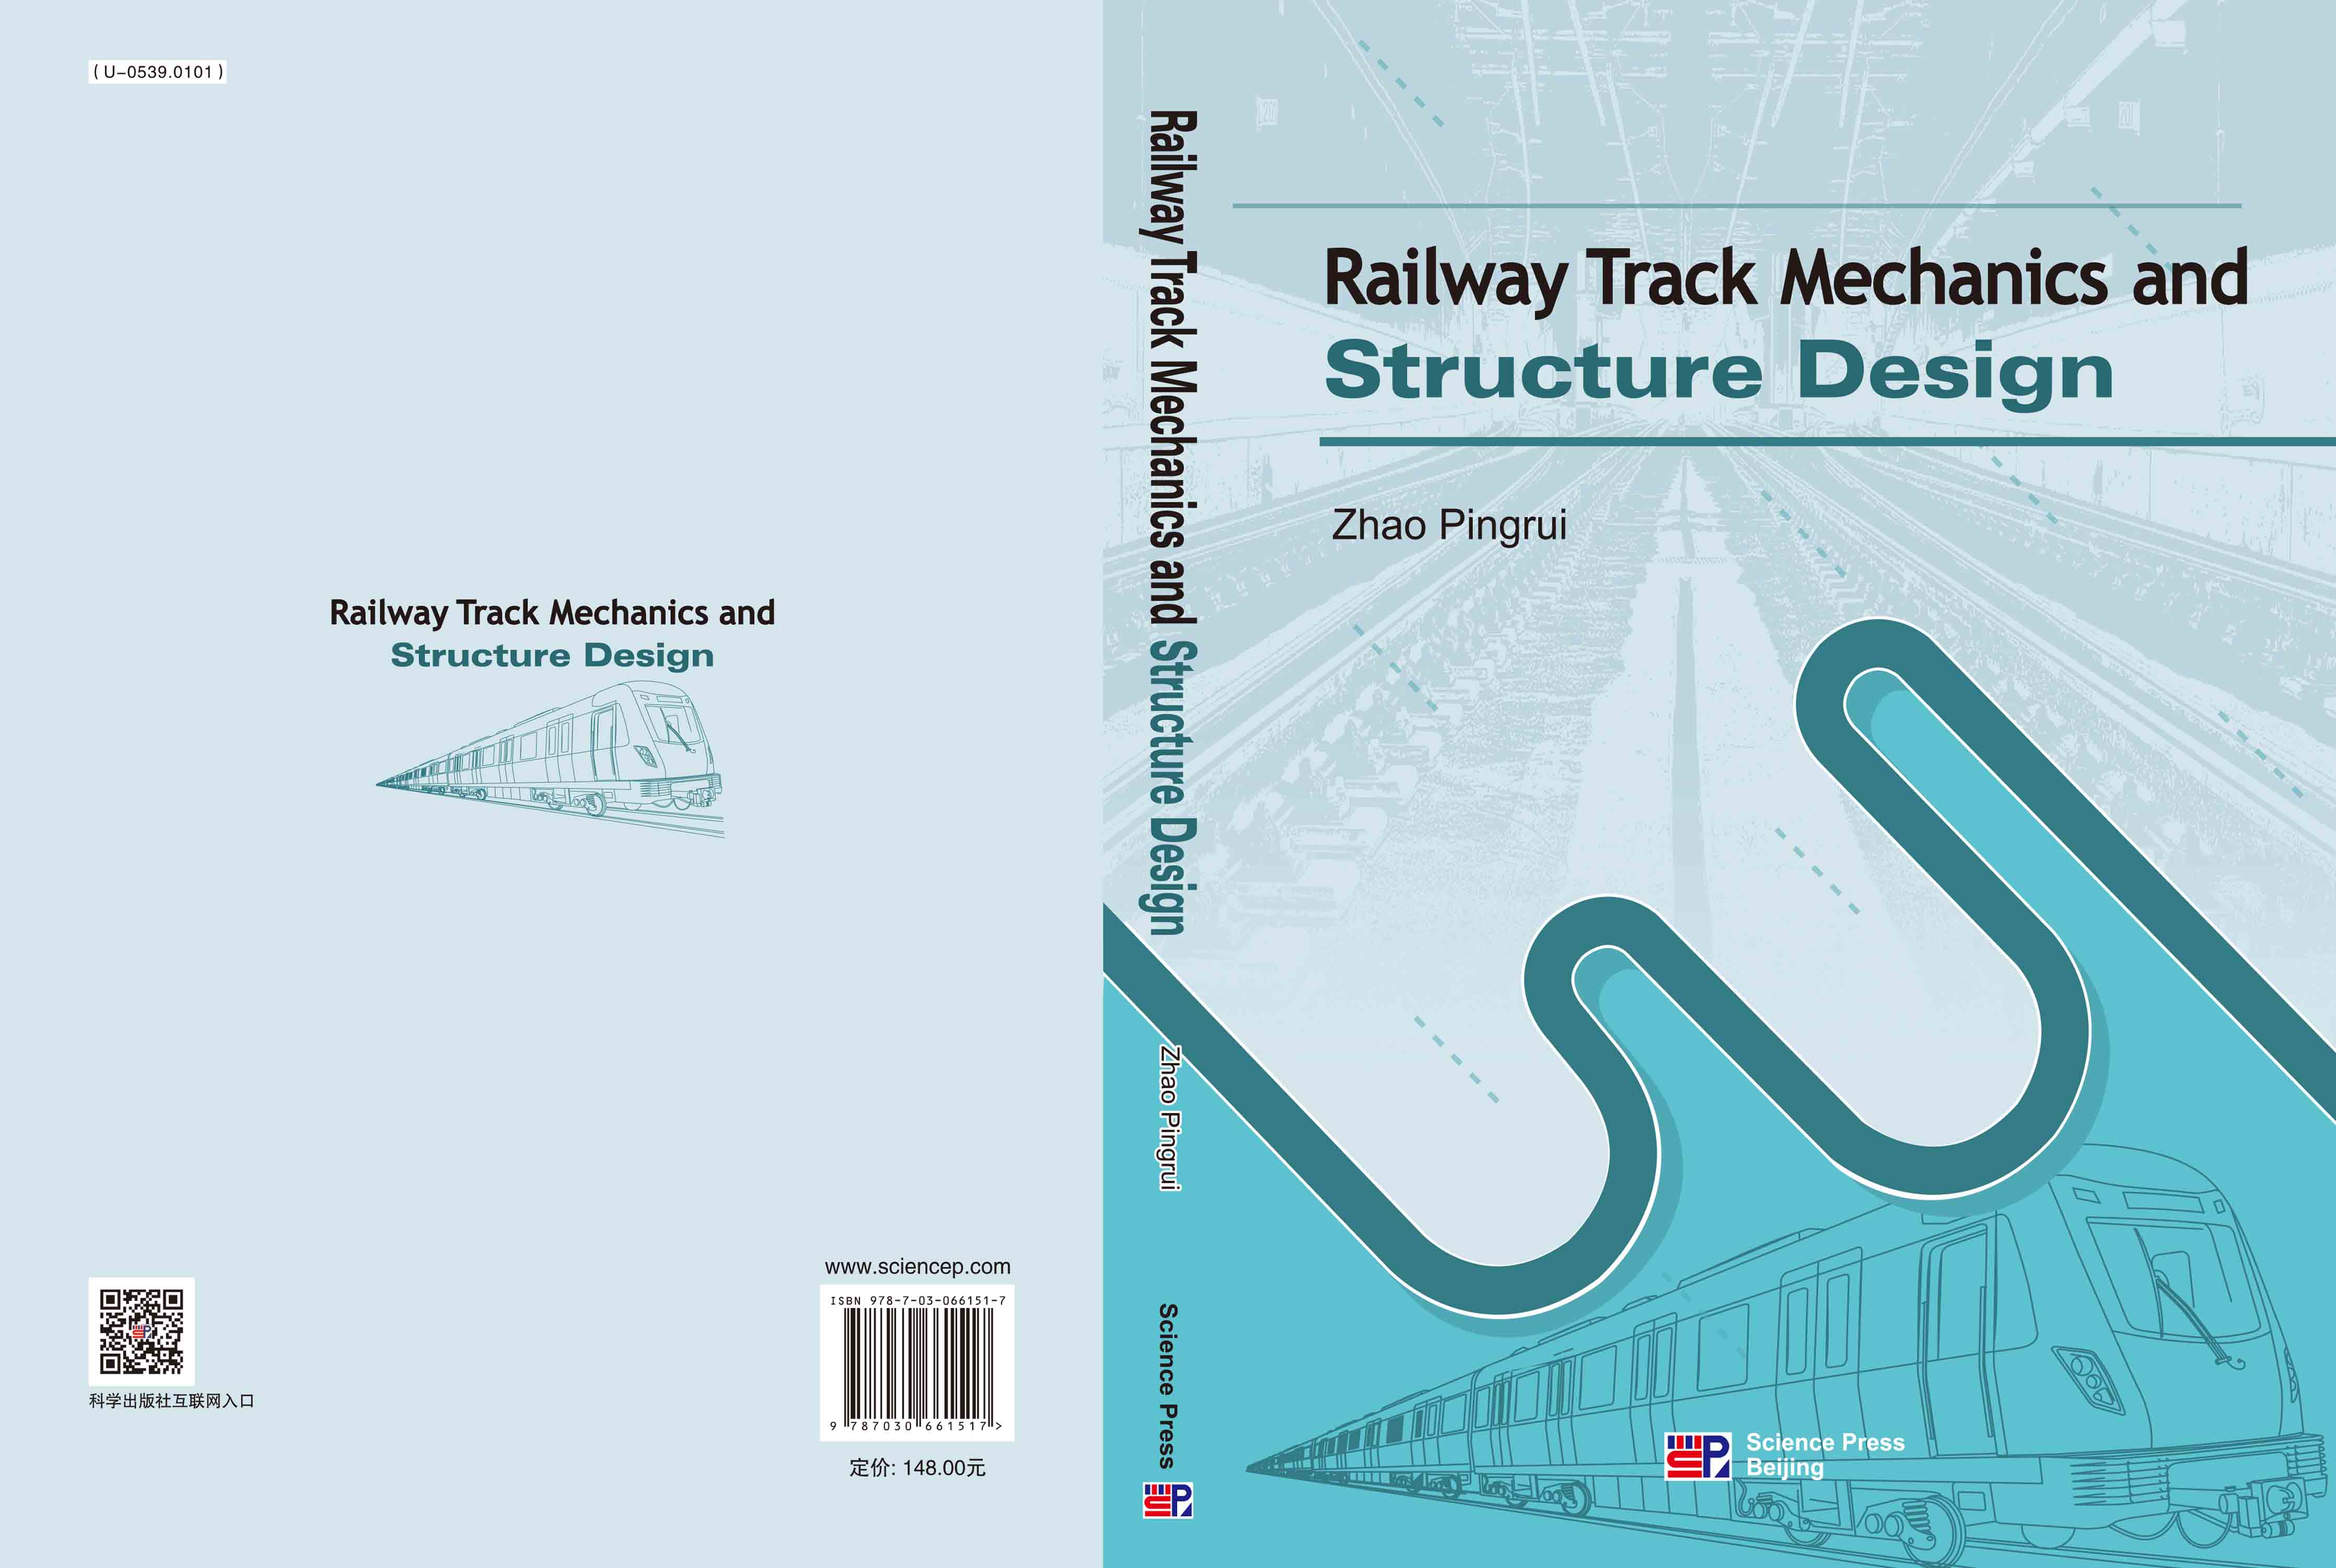 铁路轨道力学与结构设计 = Railway Track Mechanics and Structure Design